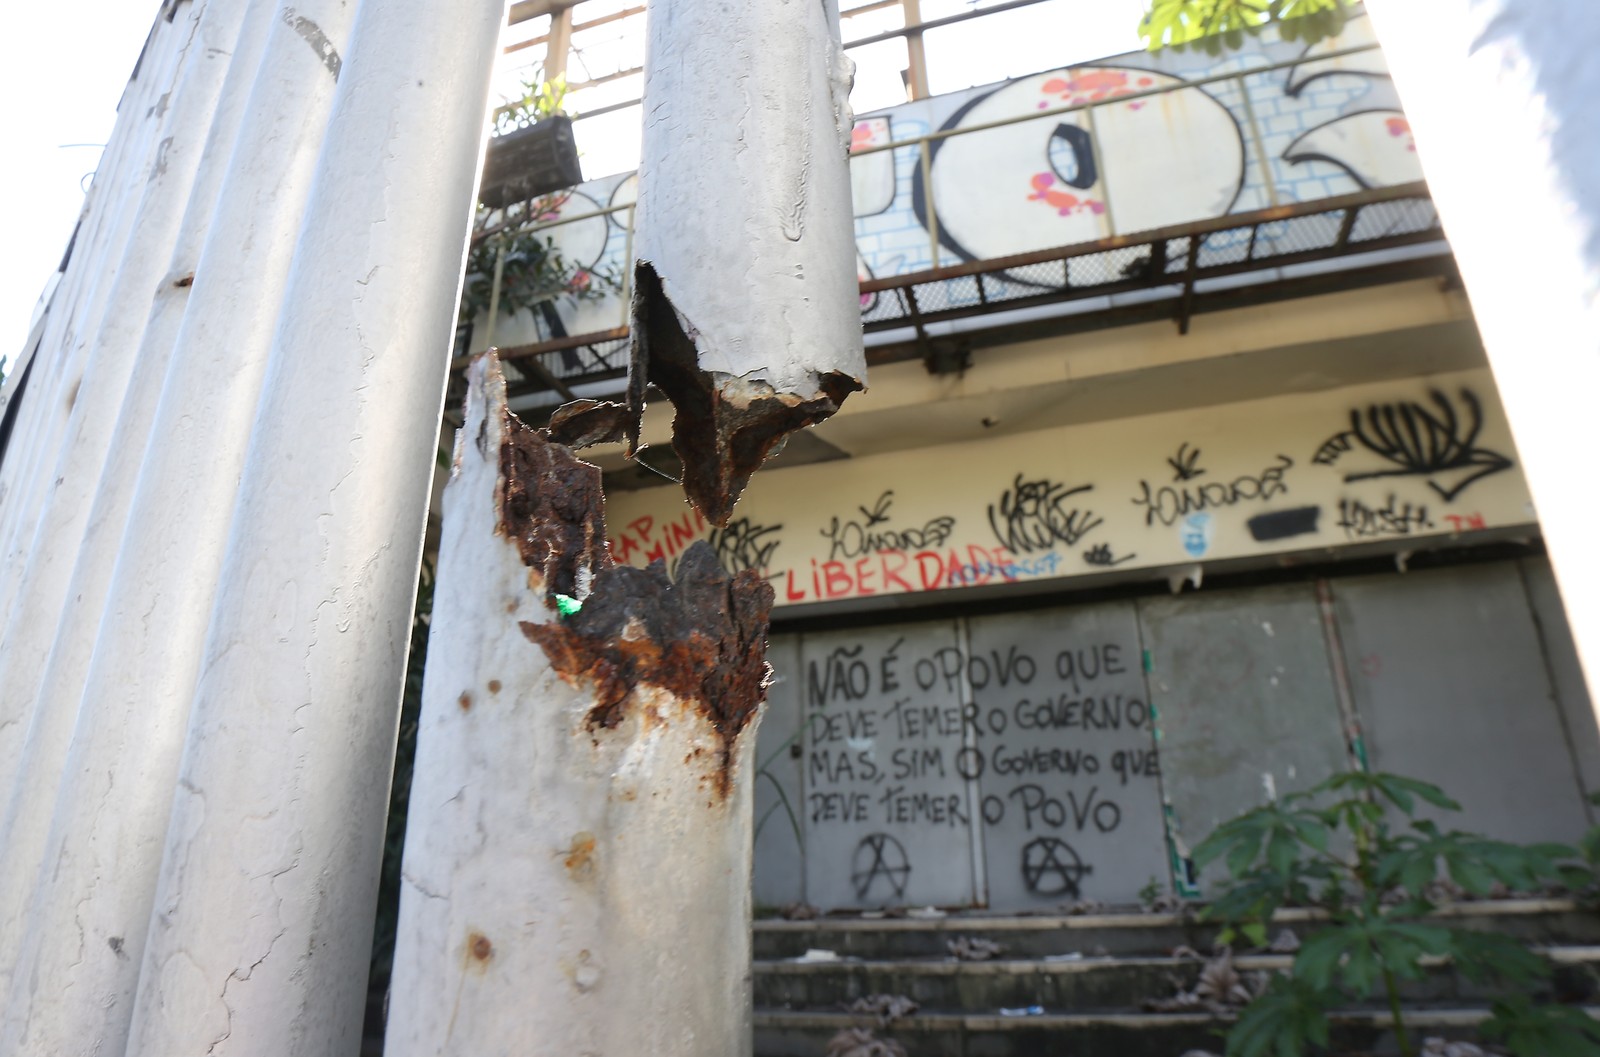 Abandono da casa de shows deixa exposta parte de suas peças enferrujadas  — Foto: Guilherme Pinto (27/05/2019)